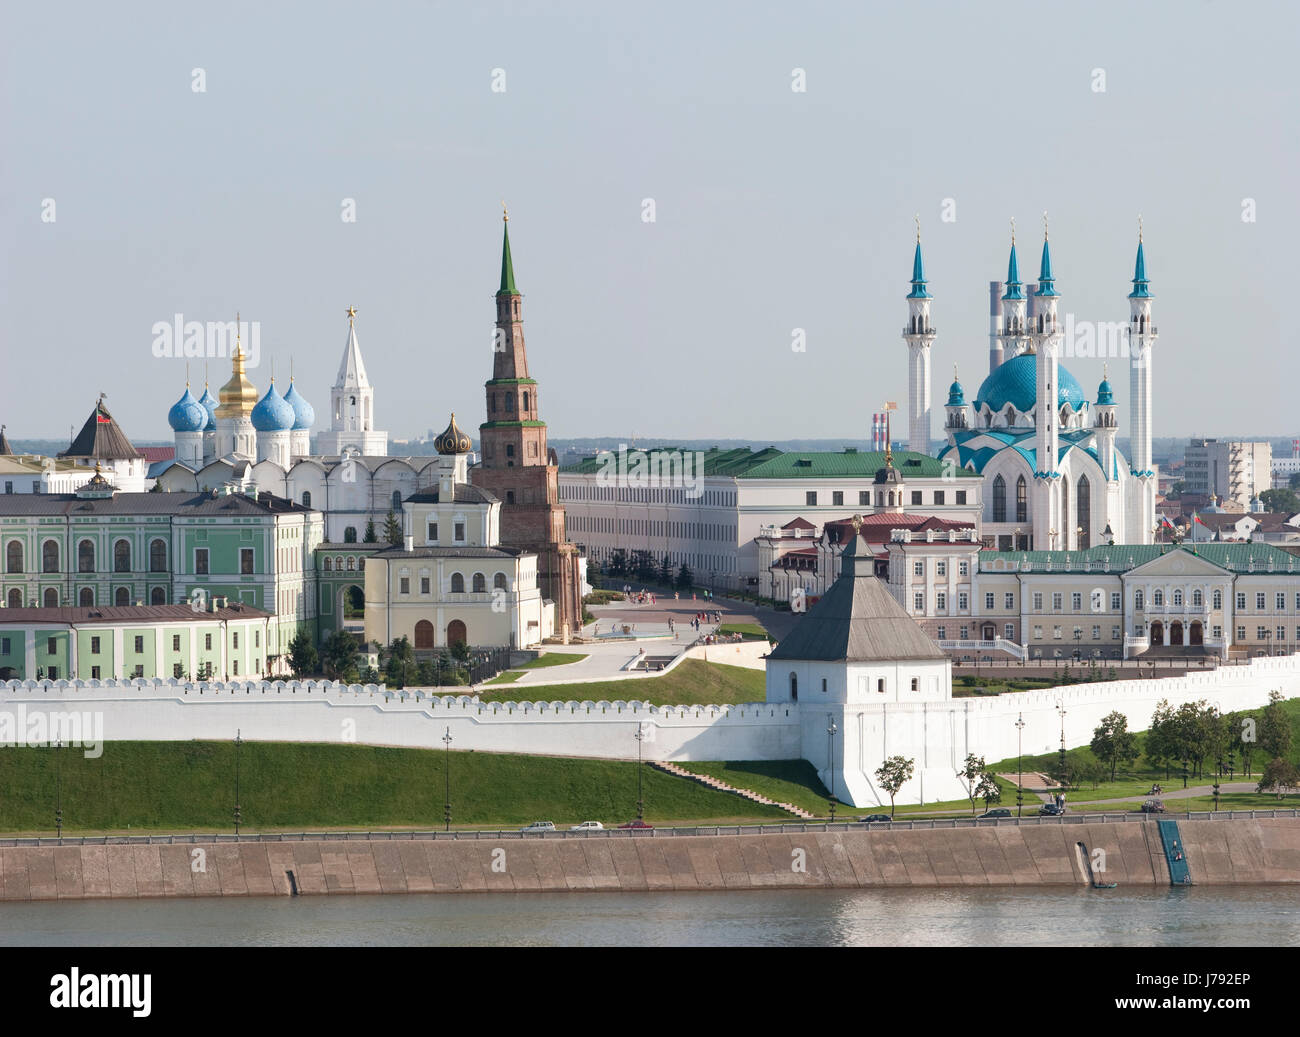 Stadt Stadt Religionsgeschichte legen Russland komplexe Turm Reisen architektonische groß Stockfoto